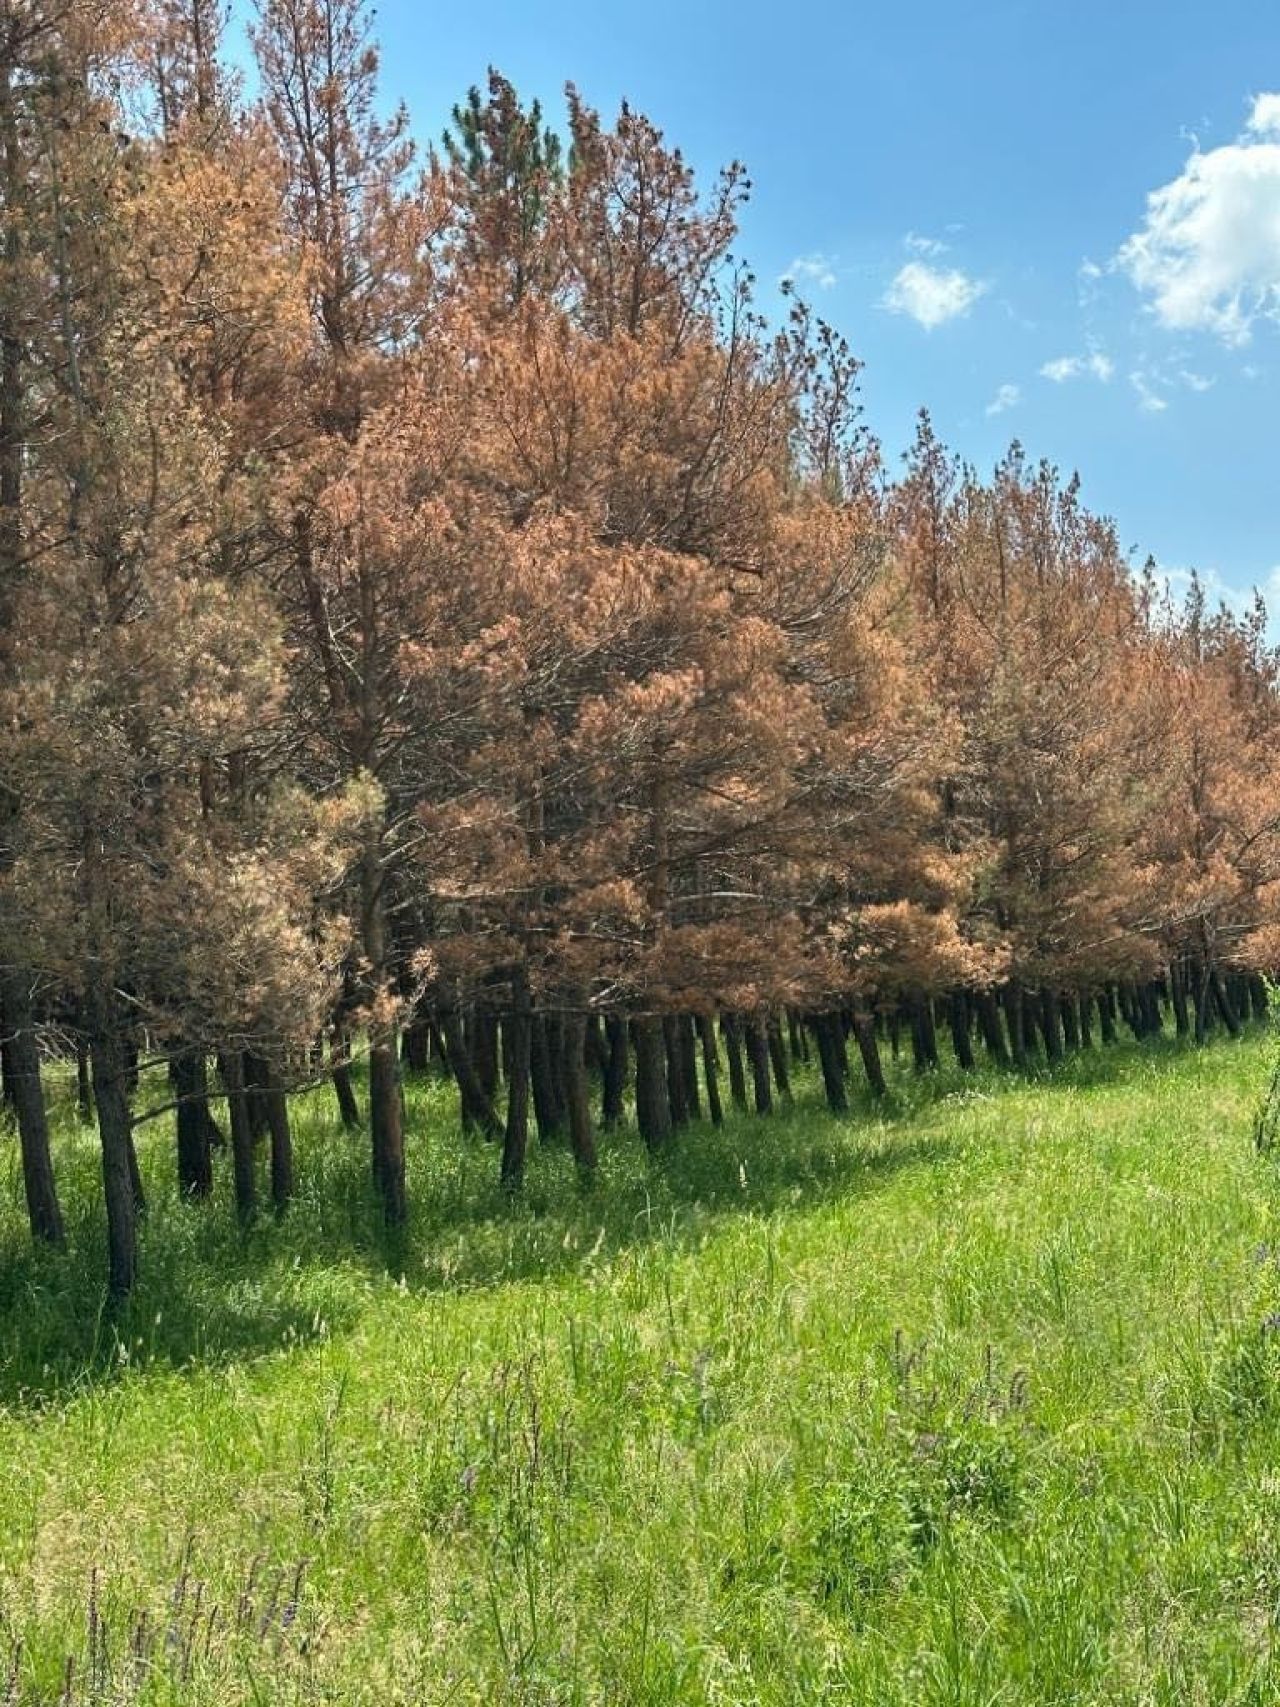 Սոճիների հիվանդության բռնկումը կշարունակվի, նրանց կորուստն աղետ կլինի Հայաստանի համար․ անտառագետ